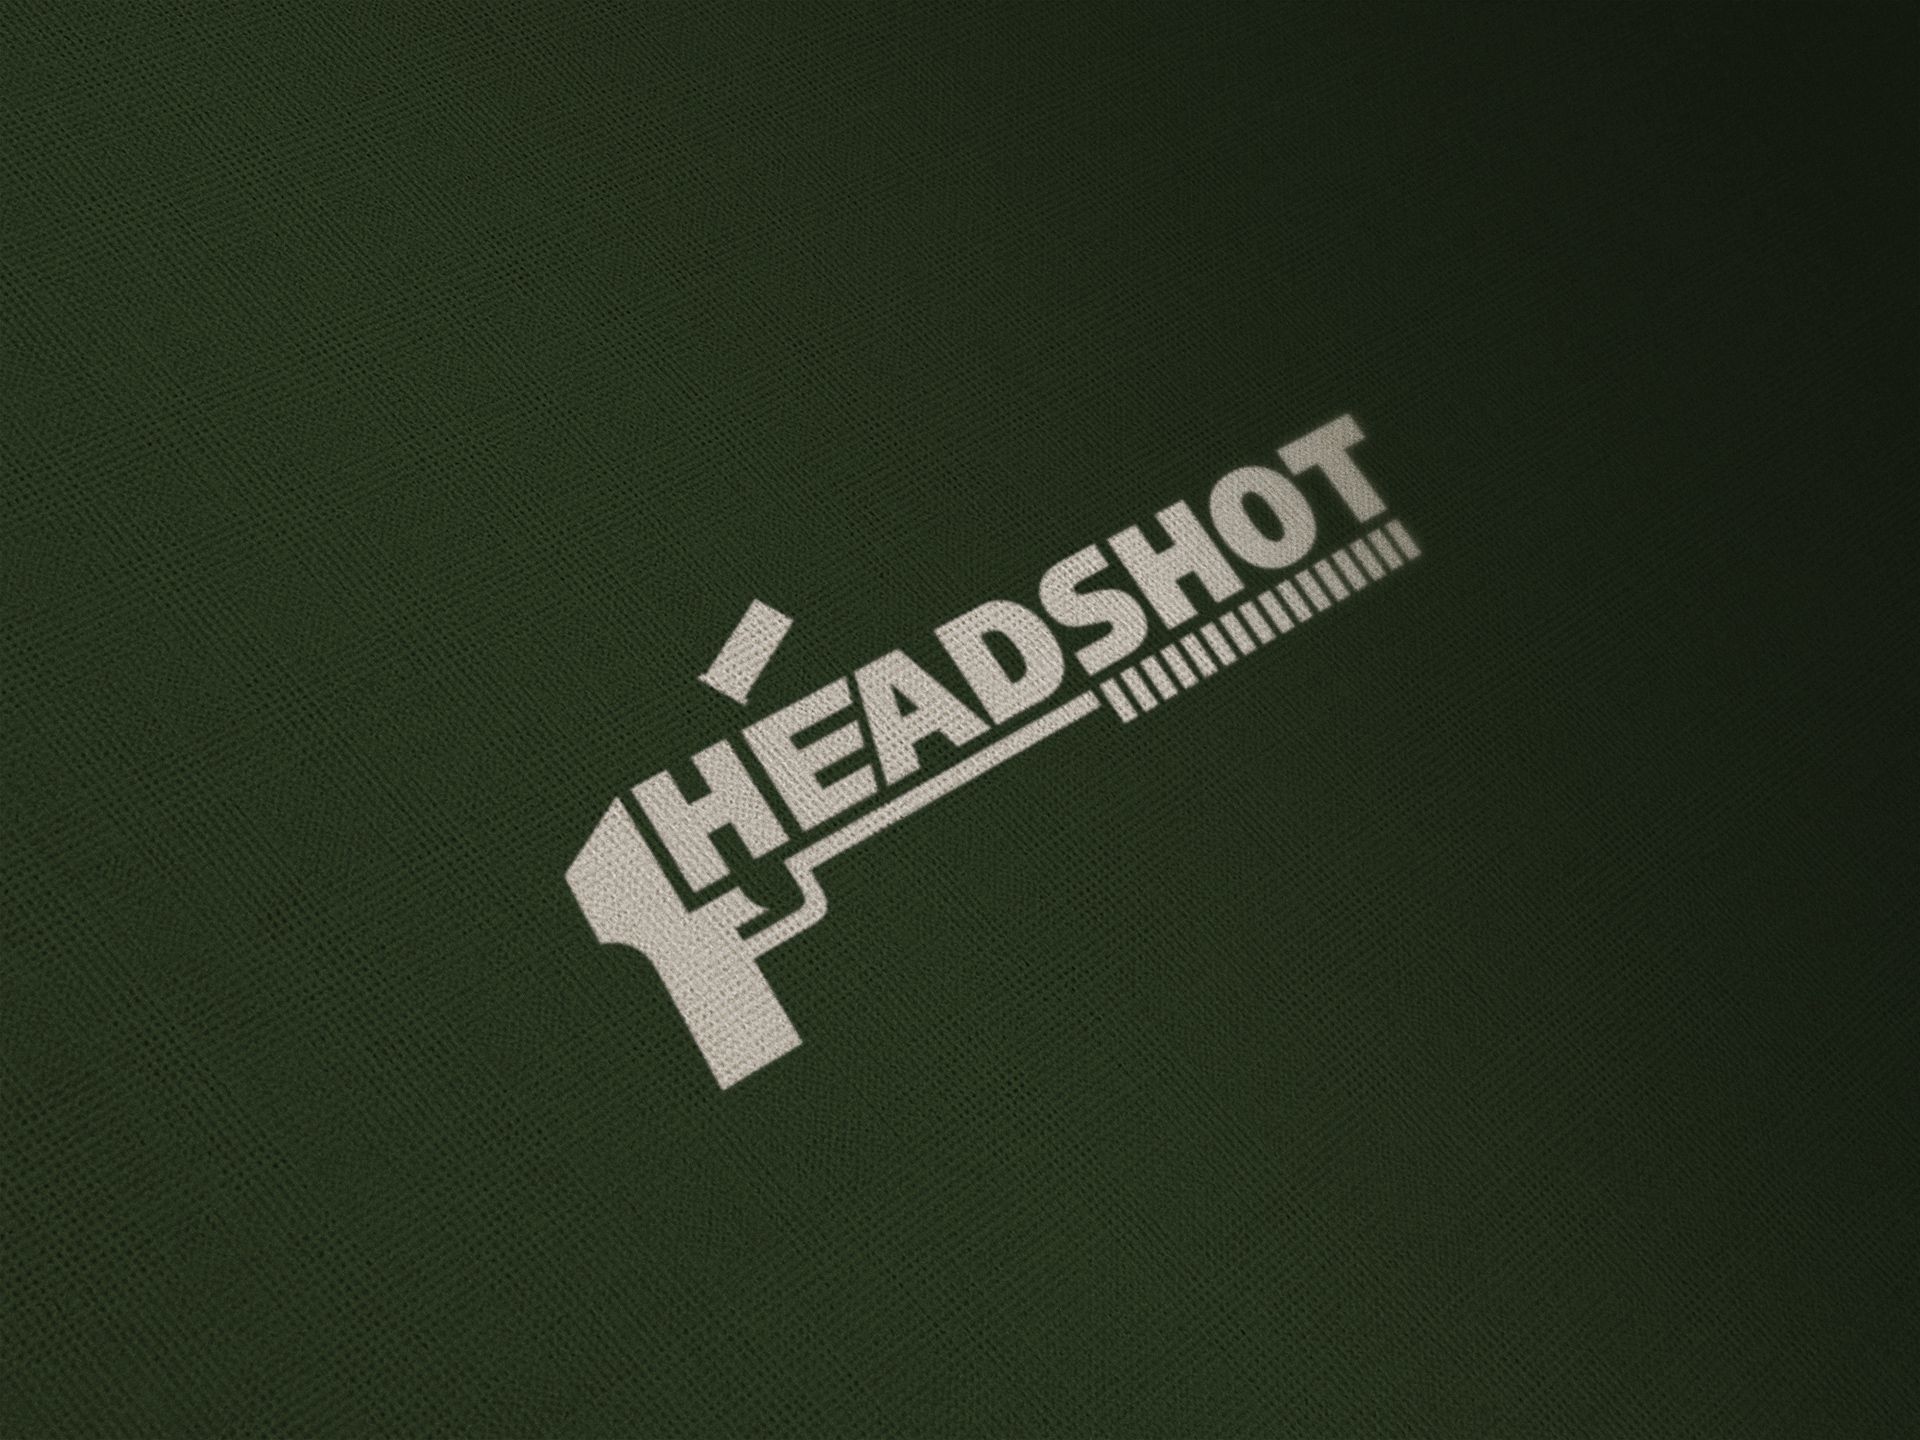 Логотип для игрового проекта HEADSHOT - дизайнер Gendarme